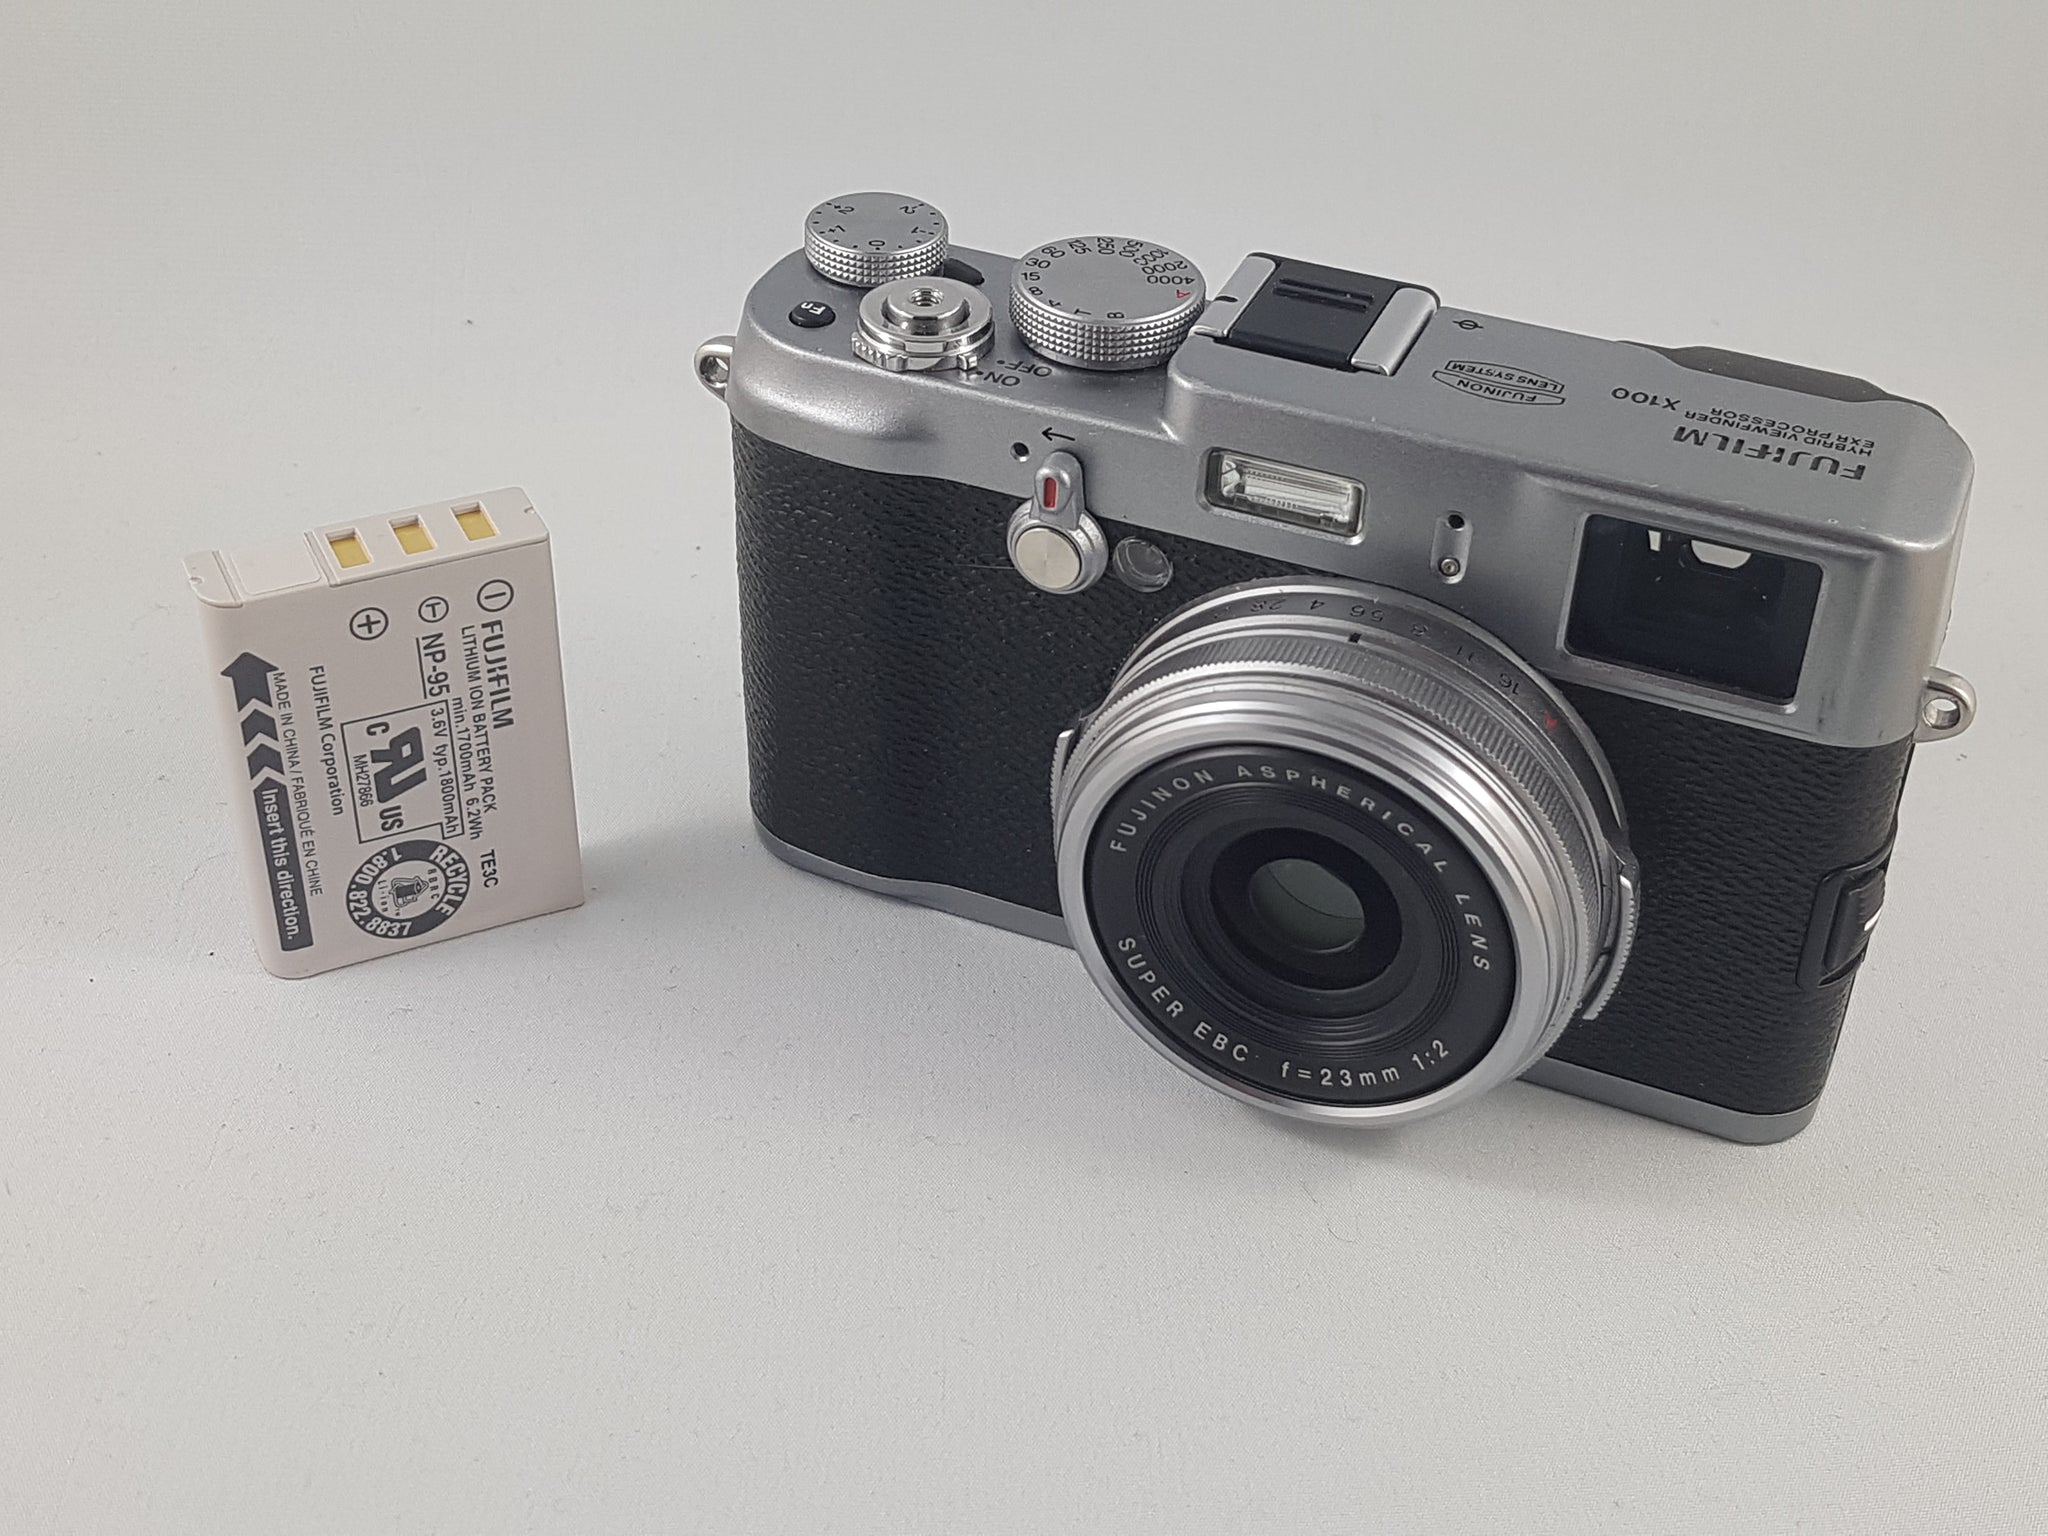 Fujifilm X100 12.3 MP APS-C CMOS EXR Digital Camera w/ 23mm